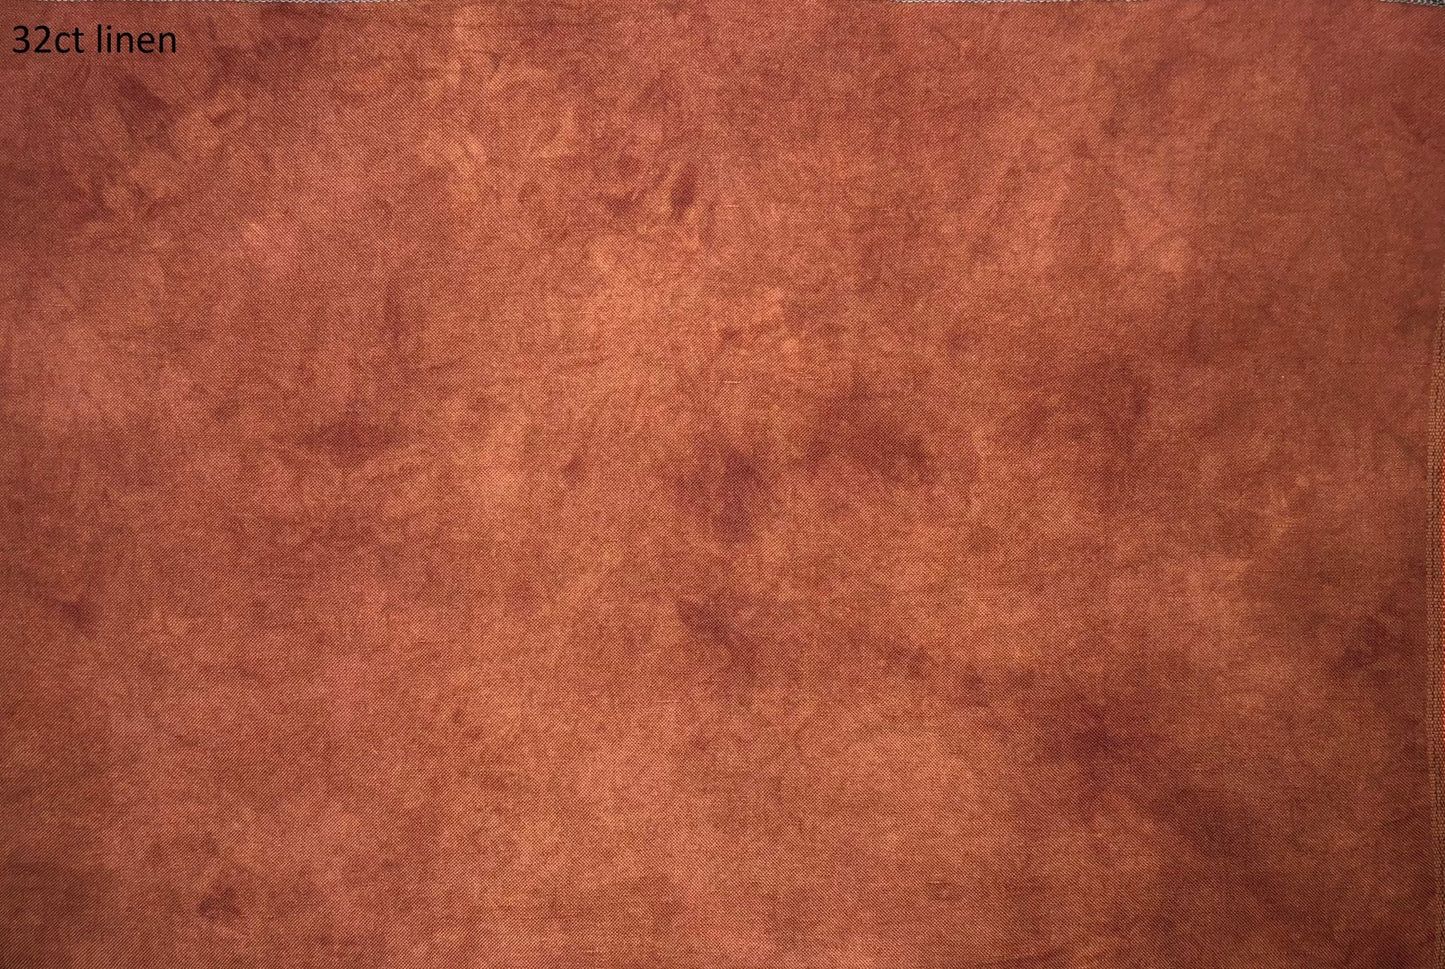 Linen - Golden Brown - Dark - Dyeing for Cross Stitch